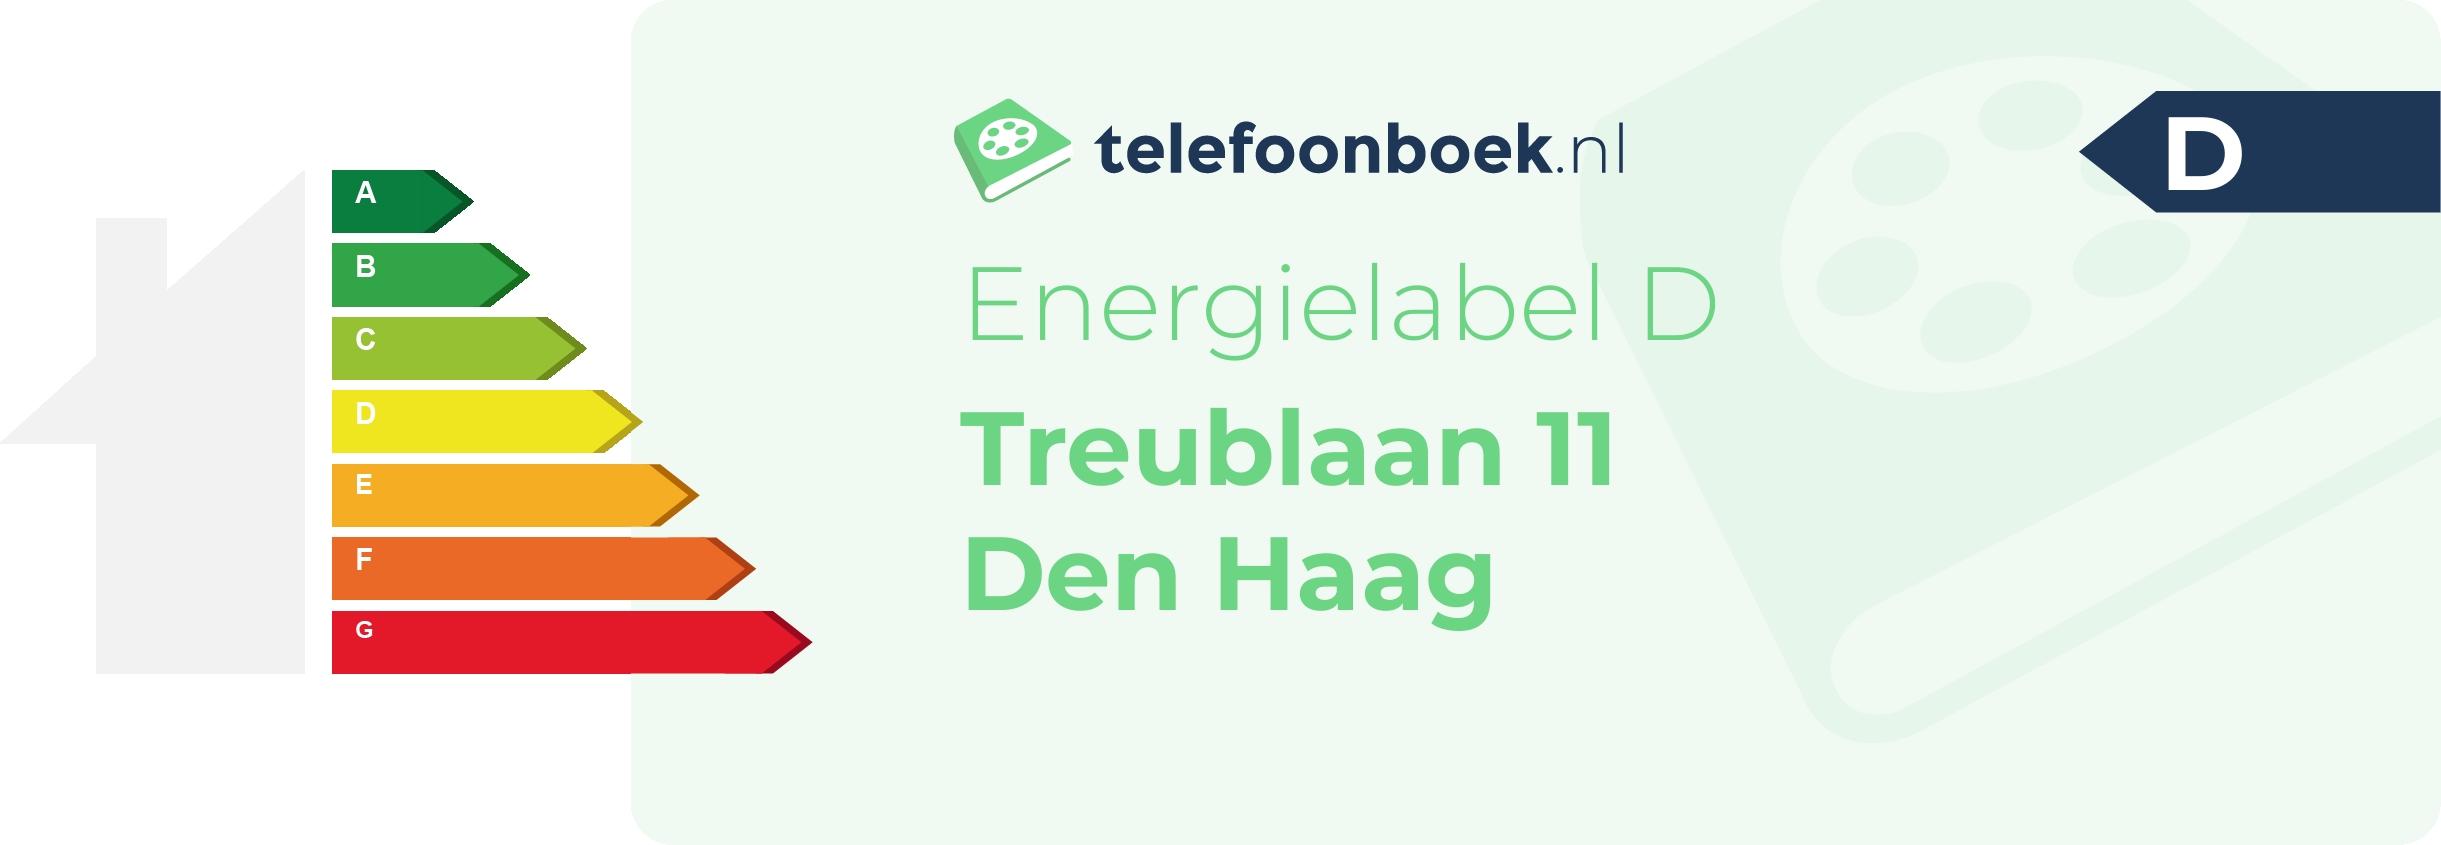 Energielabel Treublaan 11 Den Haag